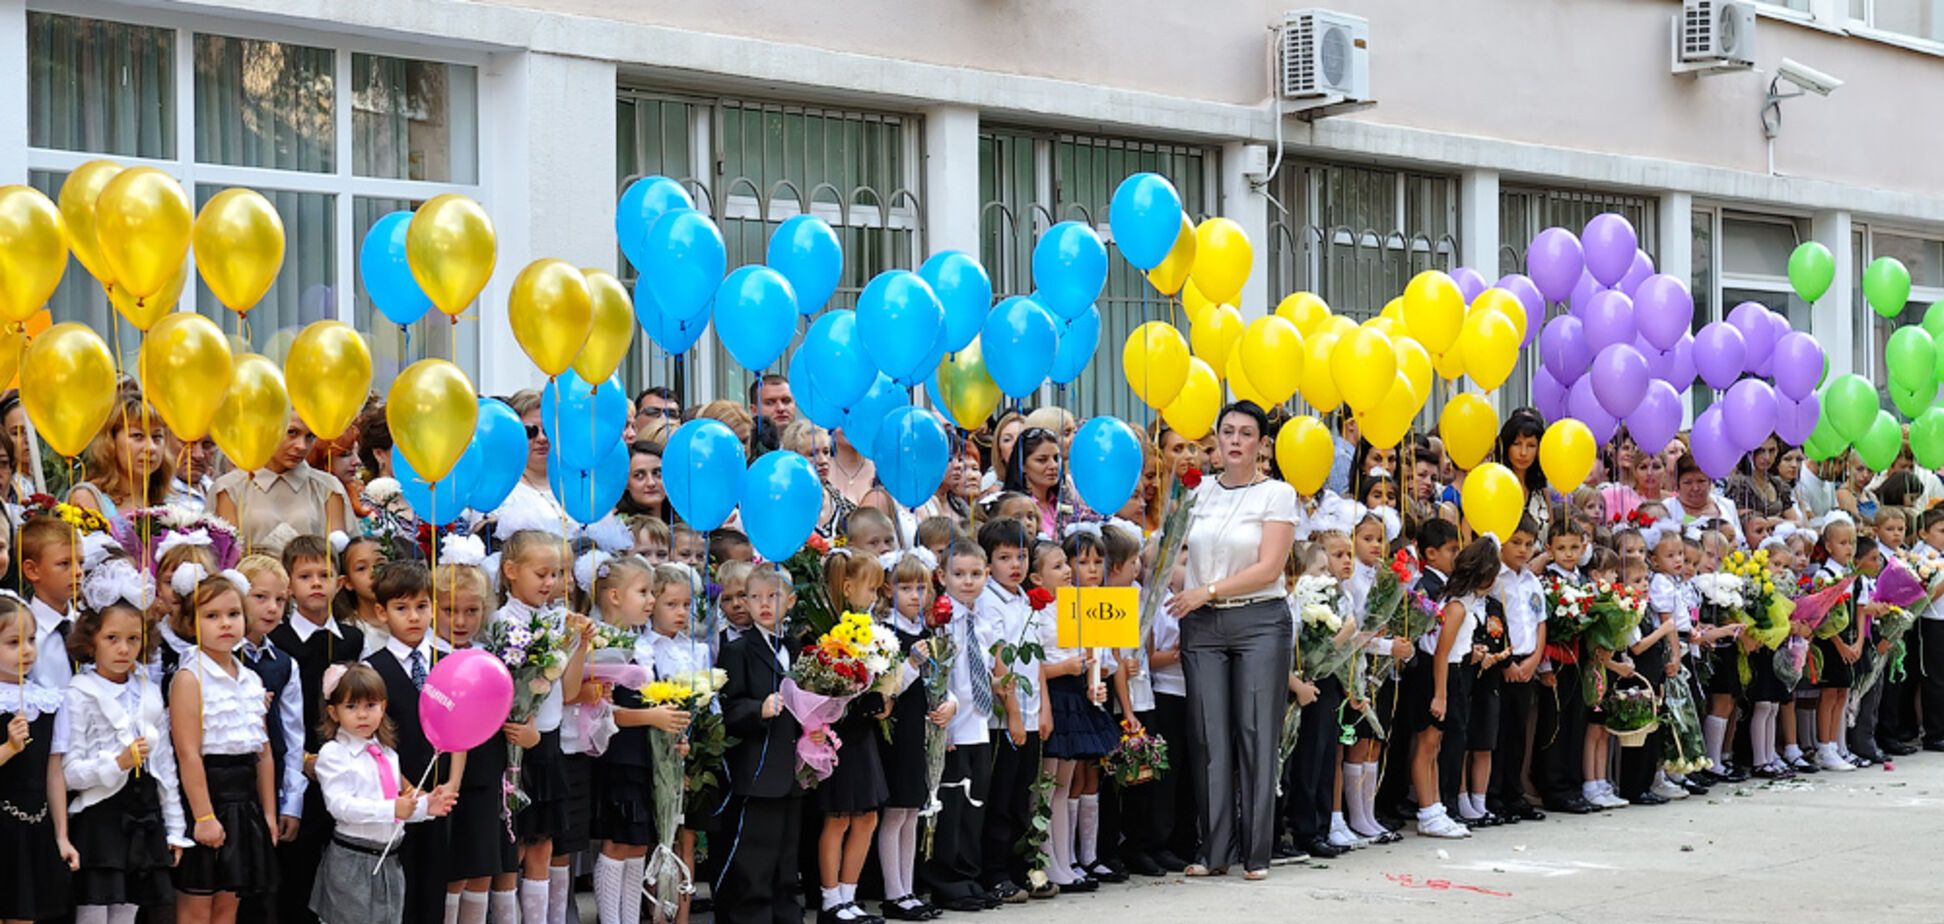 'Що за нахабність!' Українці сказали, як боротися з 'грабежем' у школах